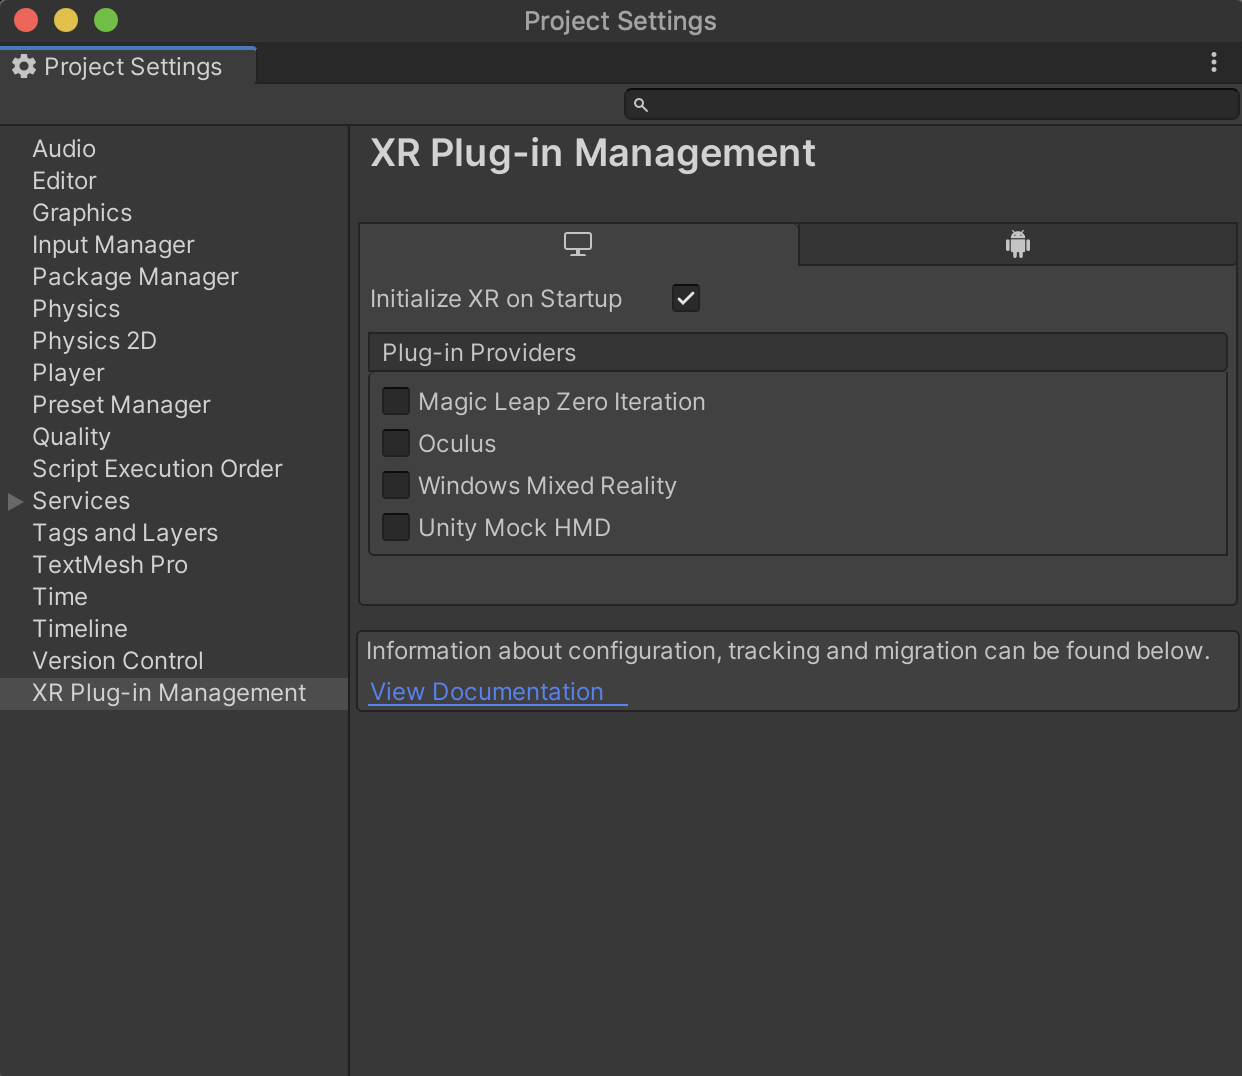 ノート: XR Plug-in Management をインストールする前に、アップグレードに関連するスクリプトのエラーを修正することをお勧めします。